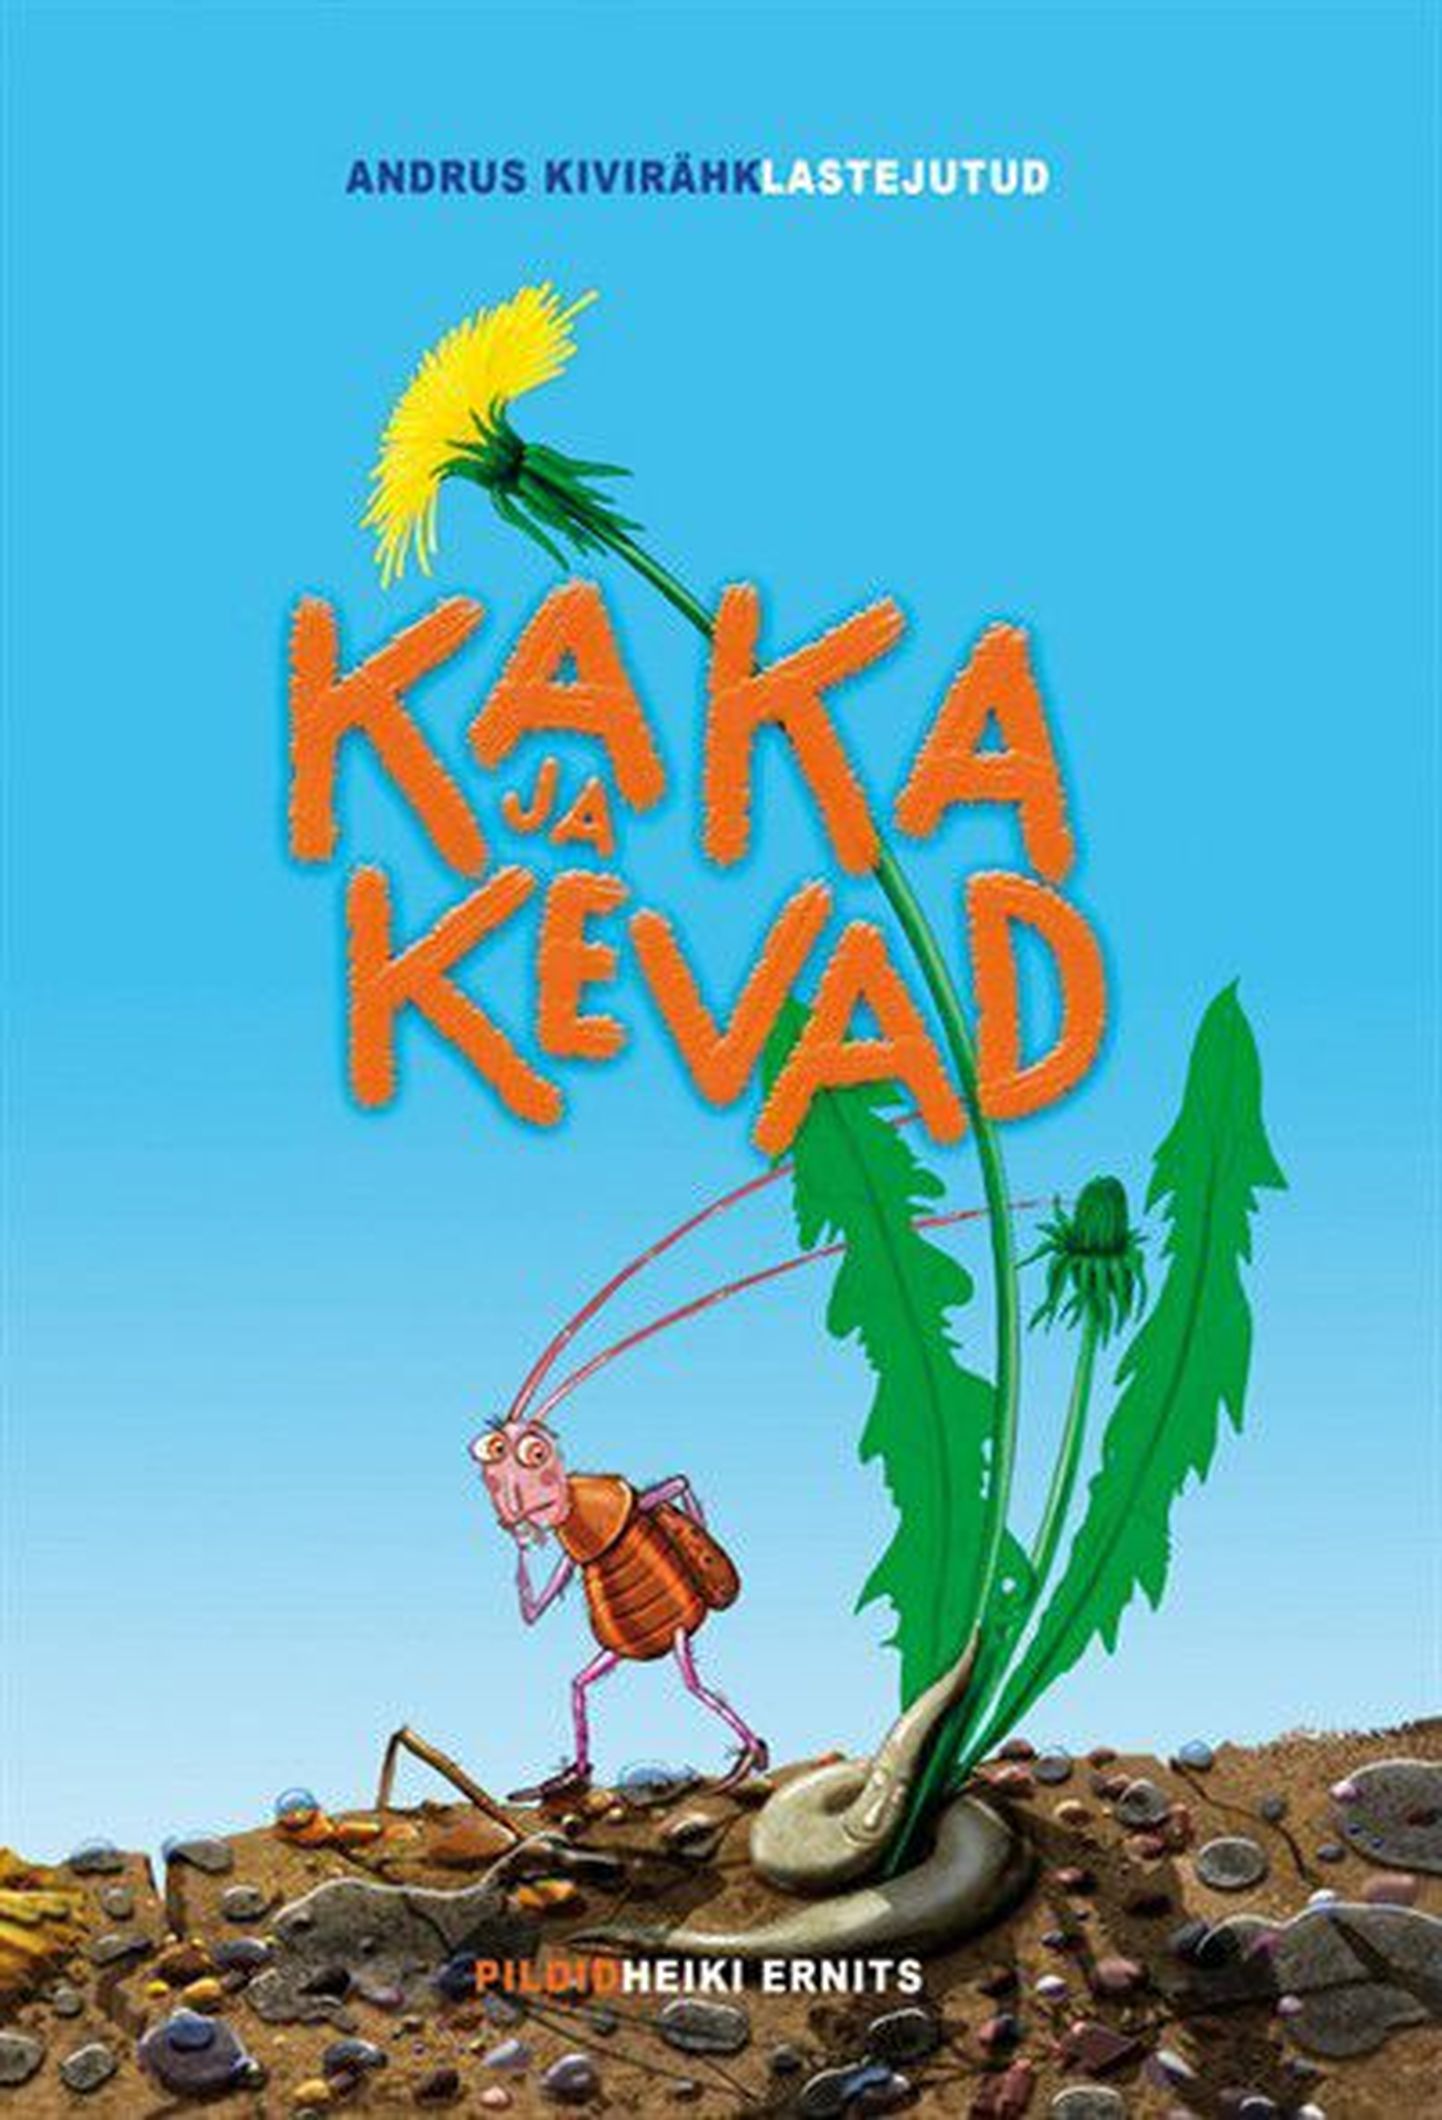 Обложка книги Андруса Кивиряхка «Kaka ja kevad».